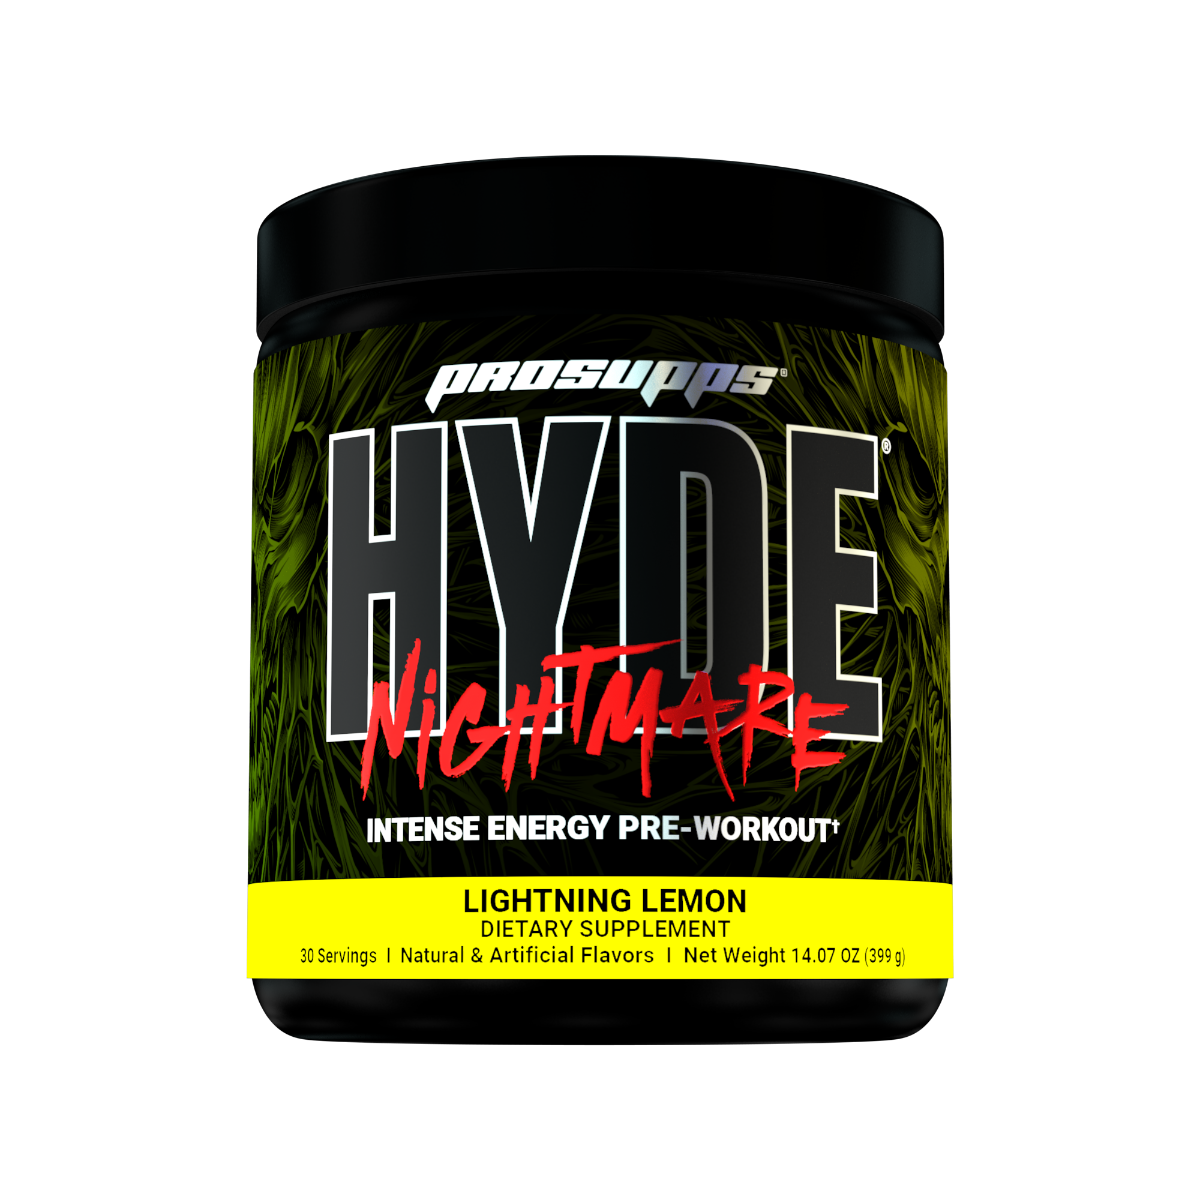 E-shop Hyde Nightmare - Prosupps lightning lemon 312 g